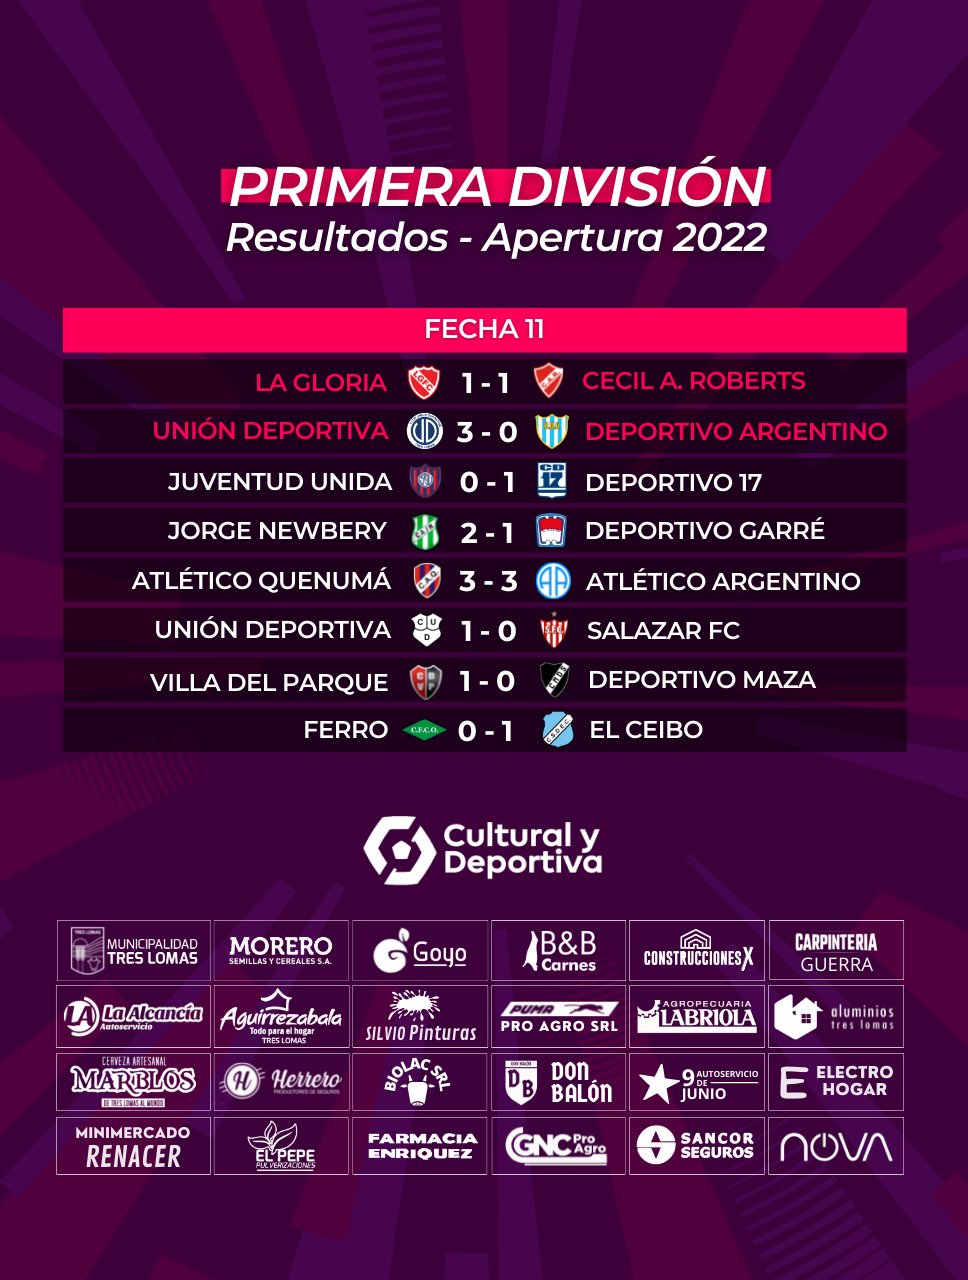 CyD Fútbol on Twitter: PRIMERA DIVISIÓN 📊 Resultados y posiciones https://t.co/PBf0NHOIky" / Twitter